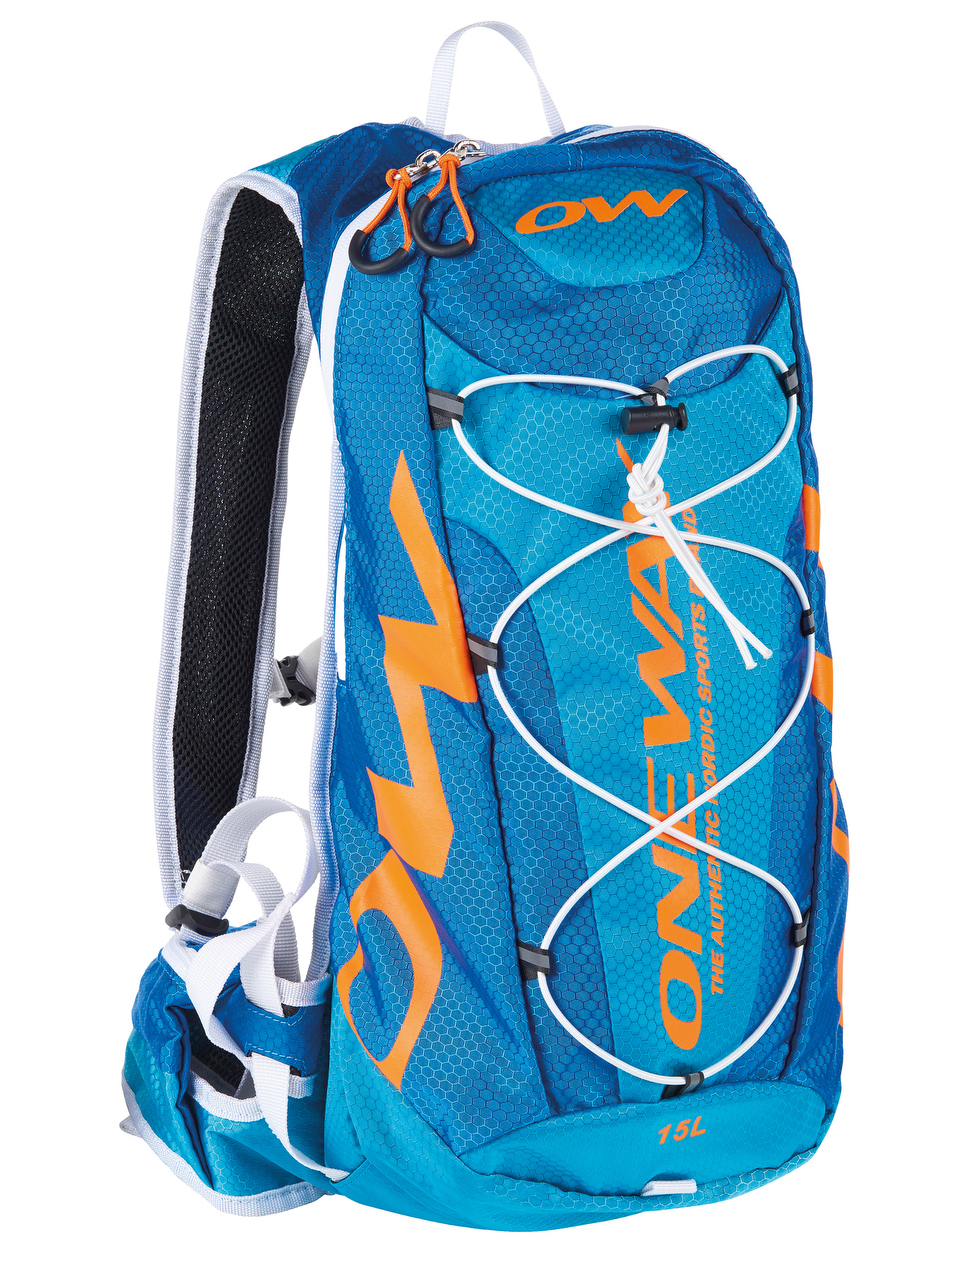 ONE WAY Trail Hydro Backpack Rucksack 15 L Blue/Orange